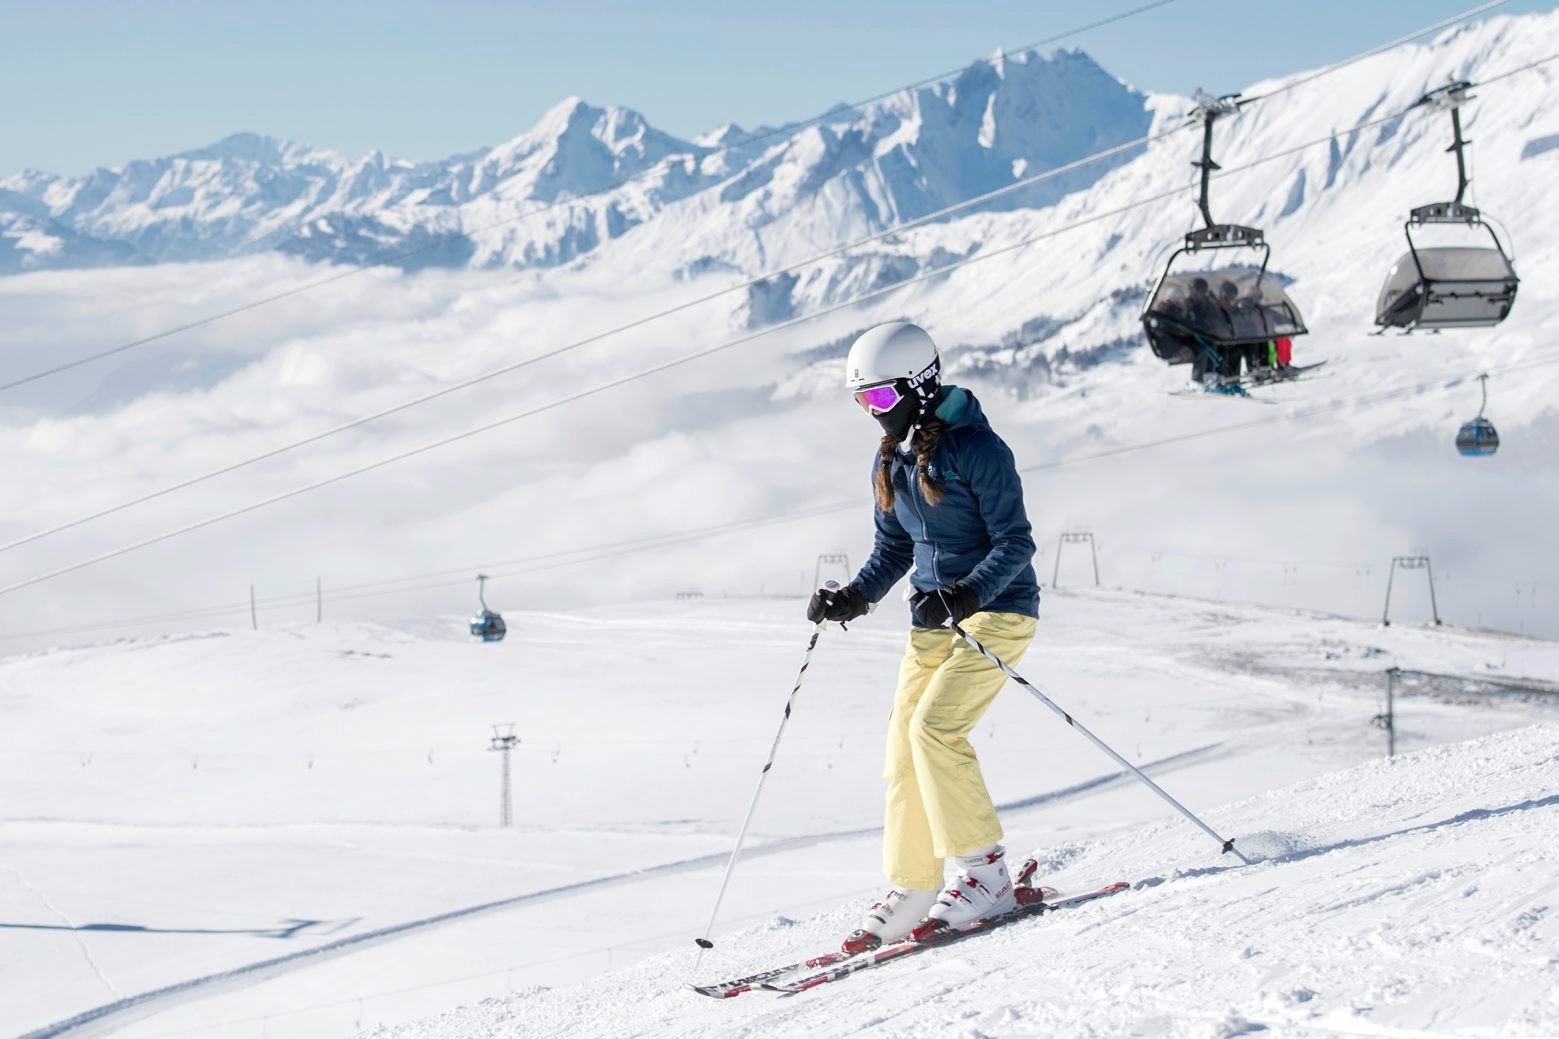 ZUR OLYMPIA-KANDIDATUR VON SION FUER DIE OLYMPISCHEN WINTERSPIELE 2026 STELLEN WIR IHNEN ZU DEN AUSTRAGUNGSORTEN FOLGENDES BILDMATERIAL ZUR VERFUEGUNG ñ A girl skiing on one of the few open ski slopes in Crans-Montana, Switzerland, Friday, January 6, 2017. (KEYSTONE/Leo Duperrex) OLYMPIA 2026 KANDIDATUR SION AUSTRAGUNGSORTE